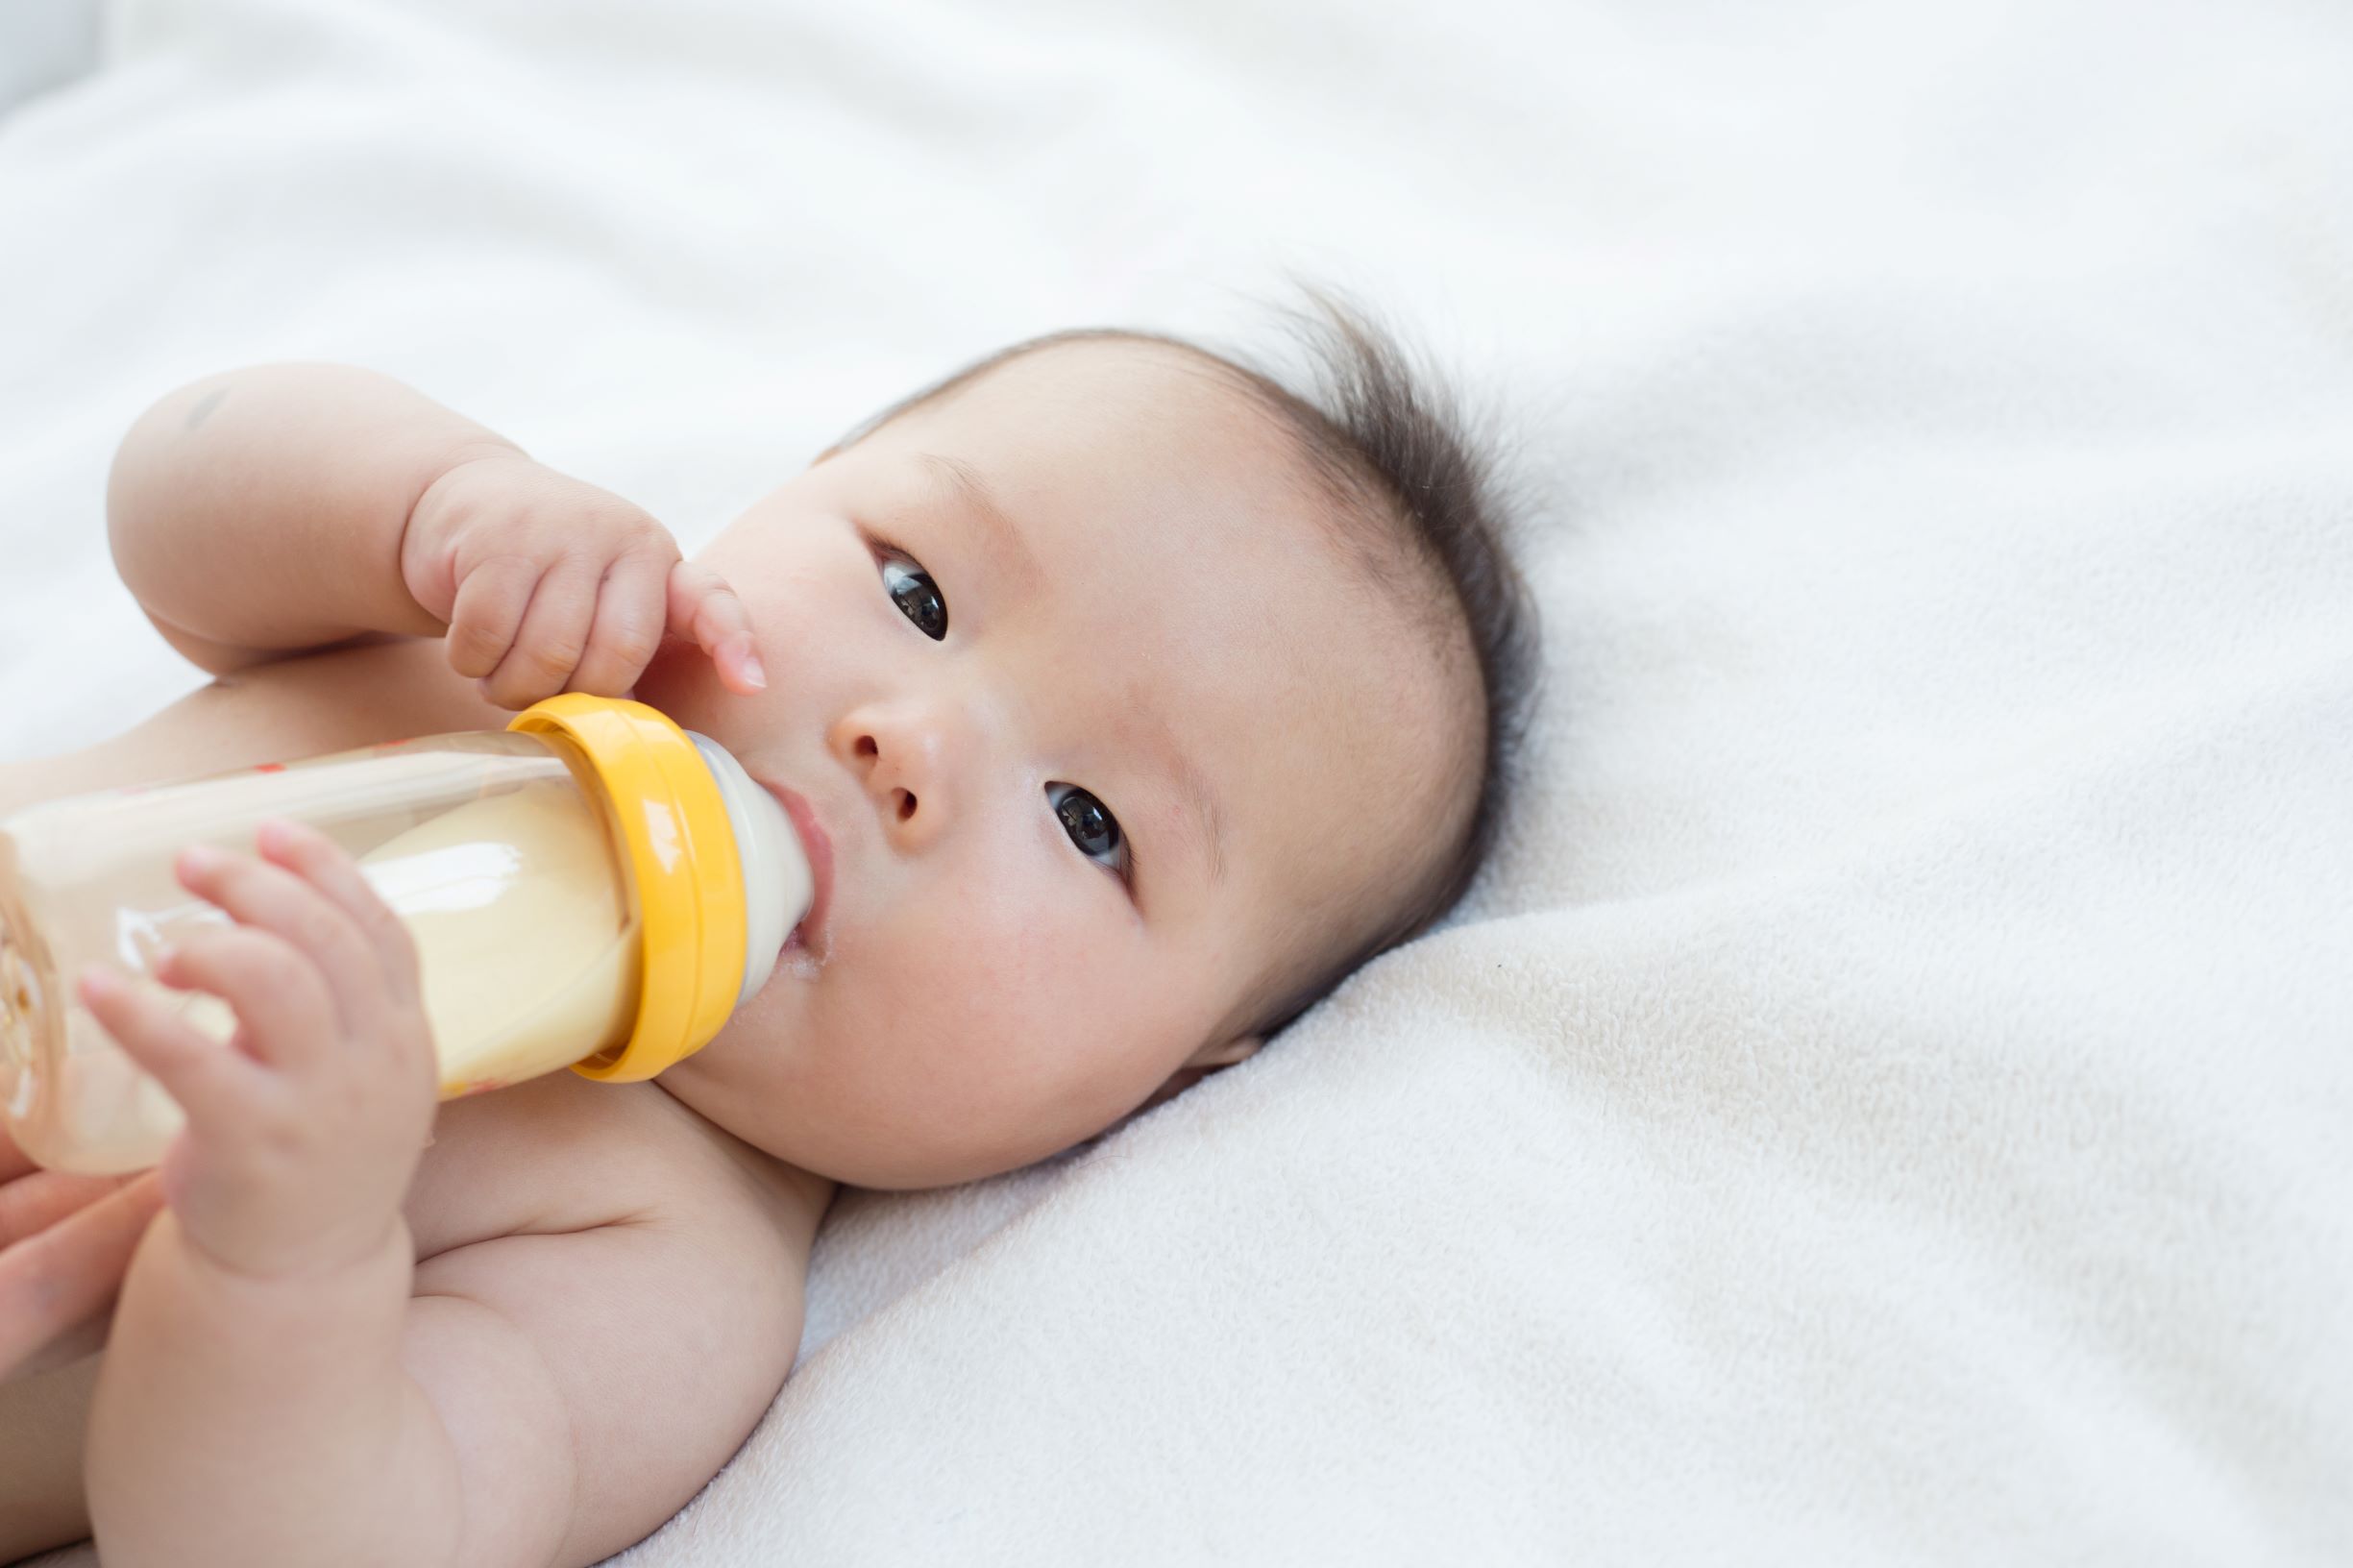 Infant Formula Feeding, Nutrition